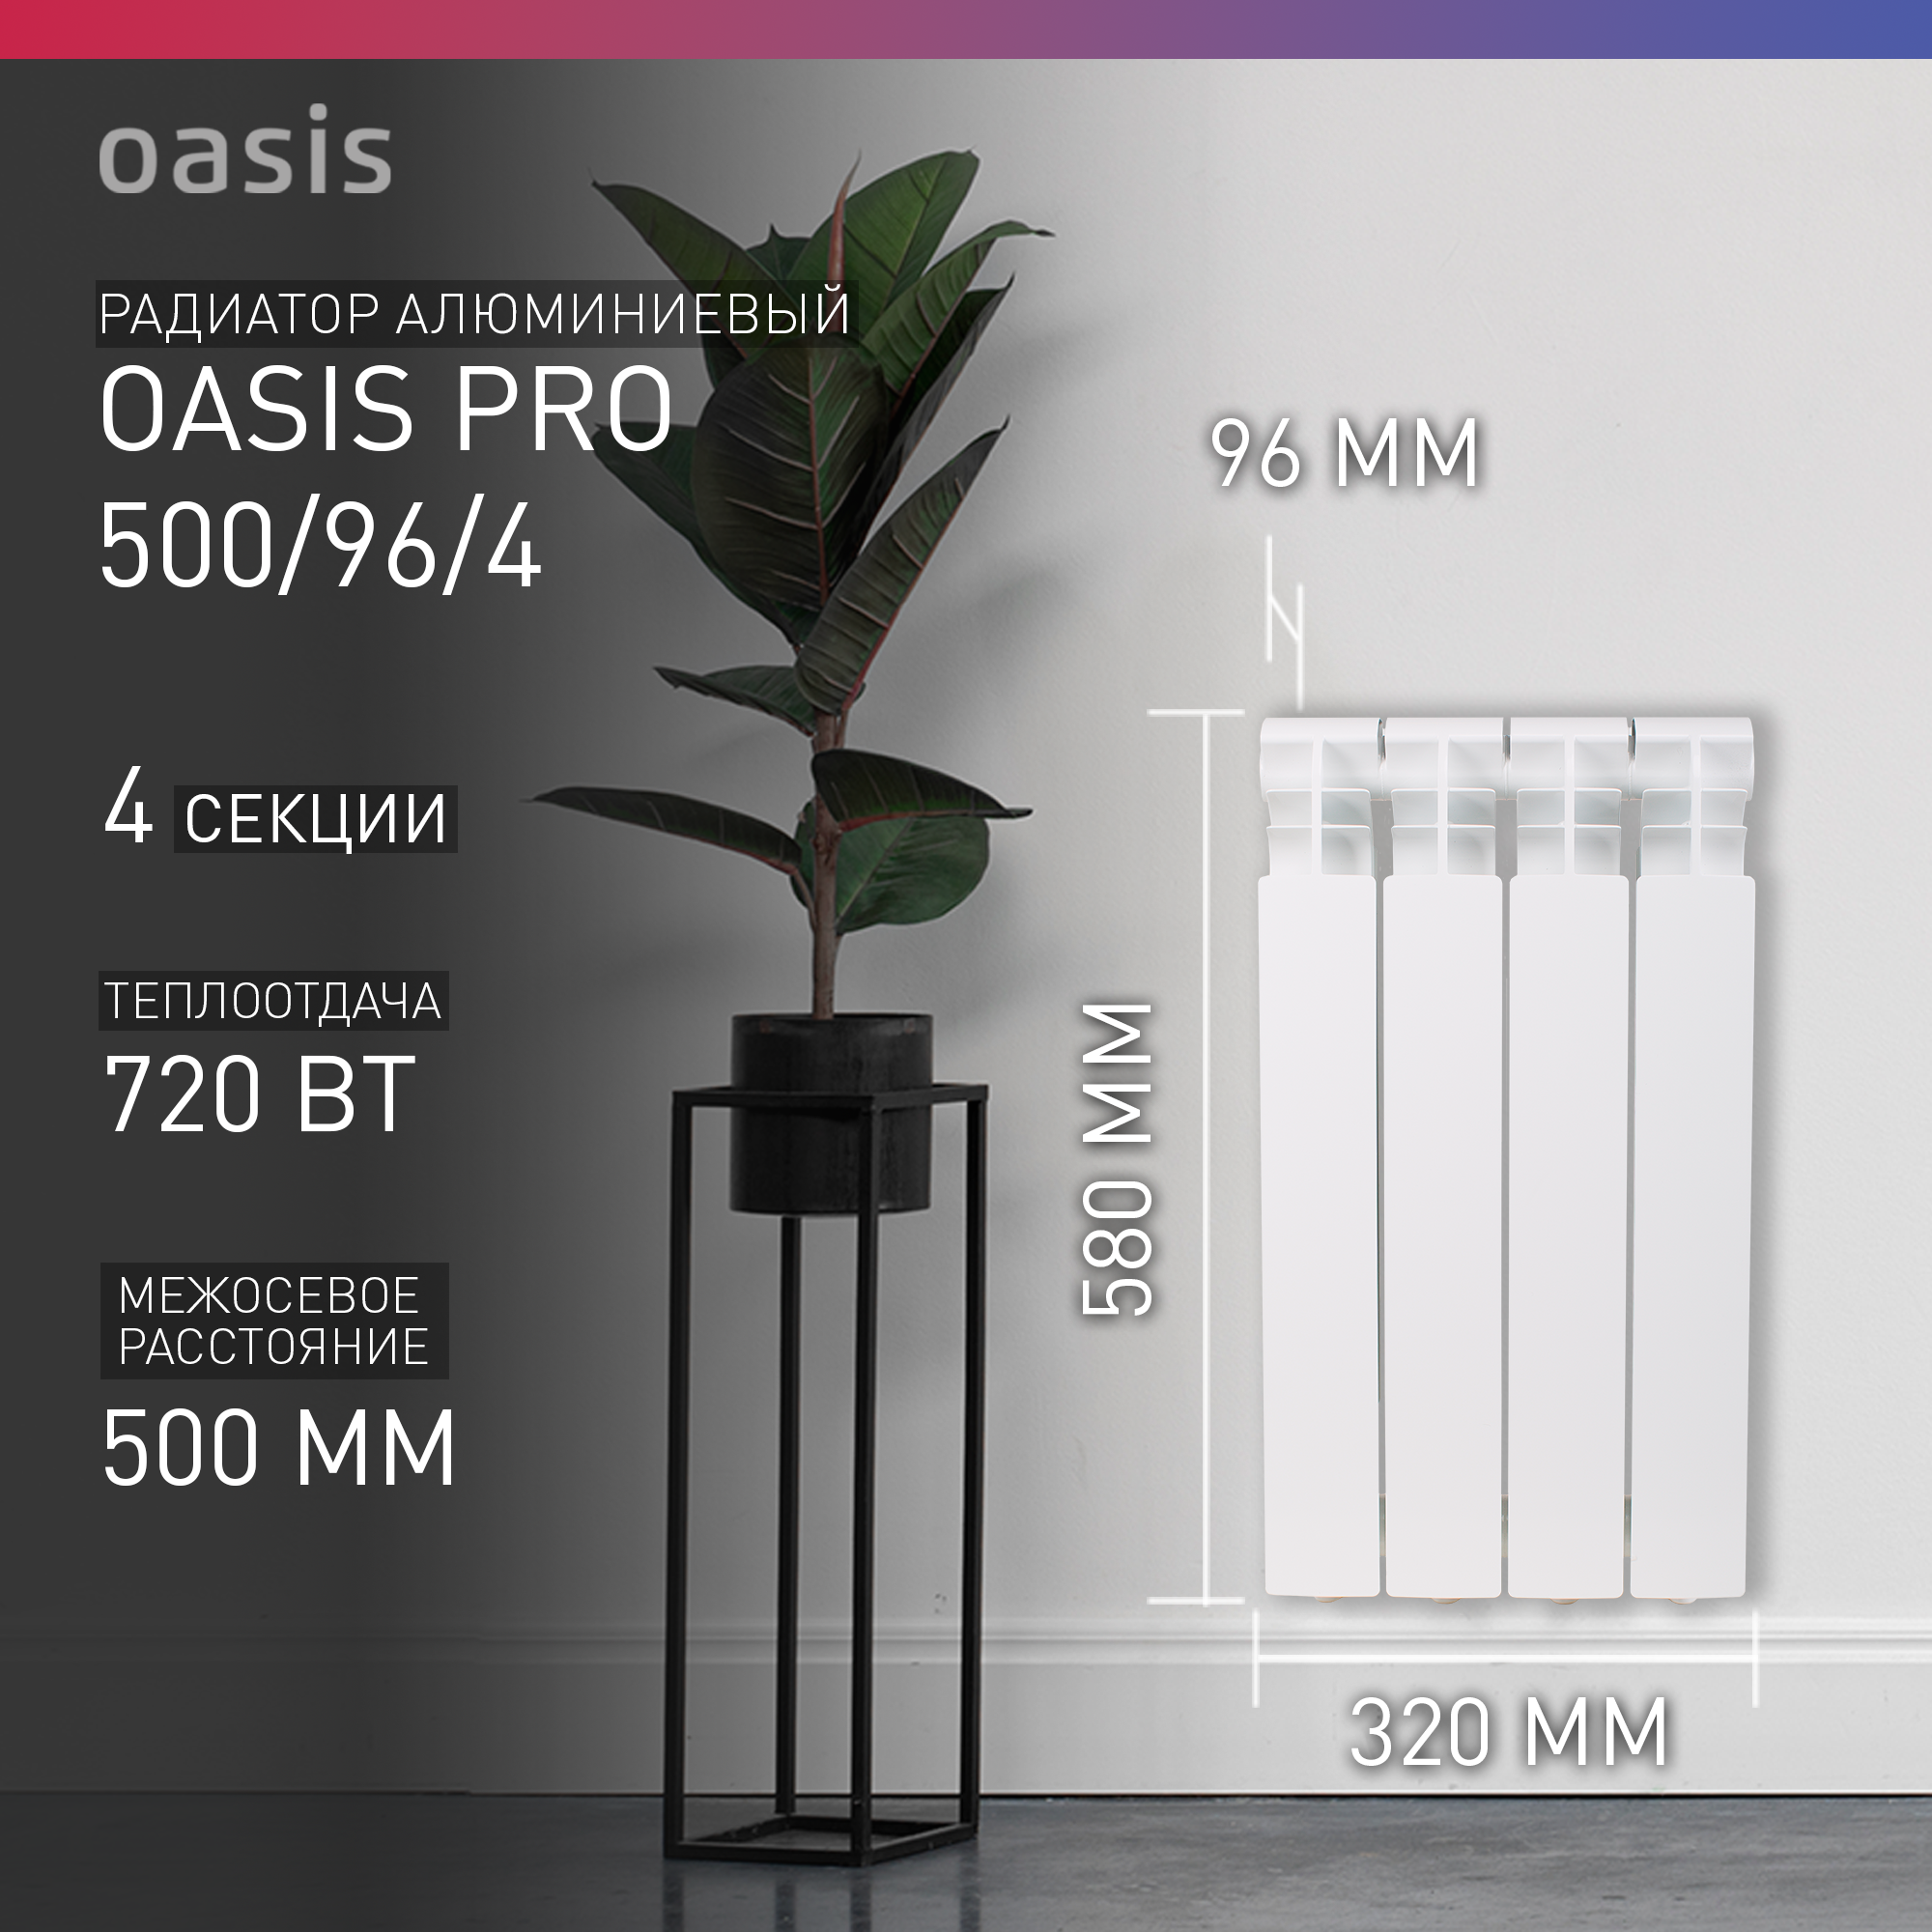 Радиатор отопления алюминиевый Oasis Pro 500/96/4, 4 секции